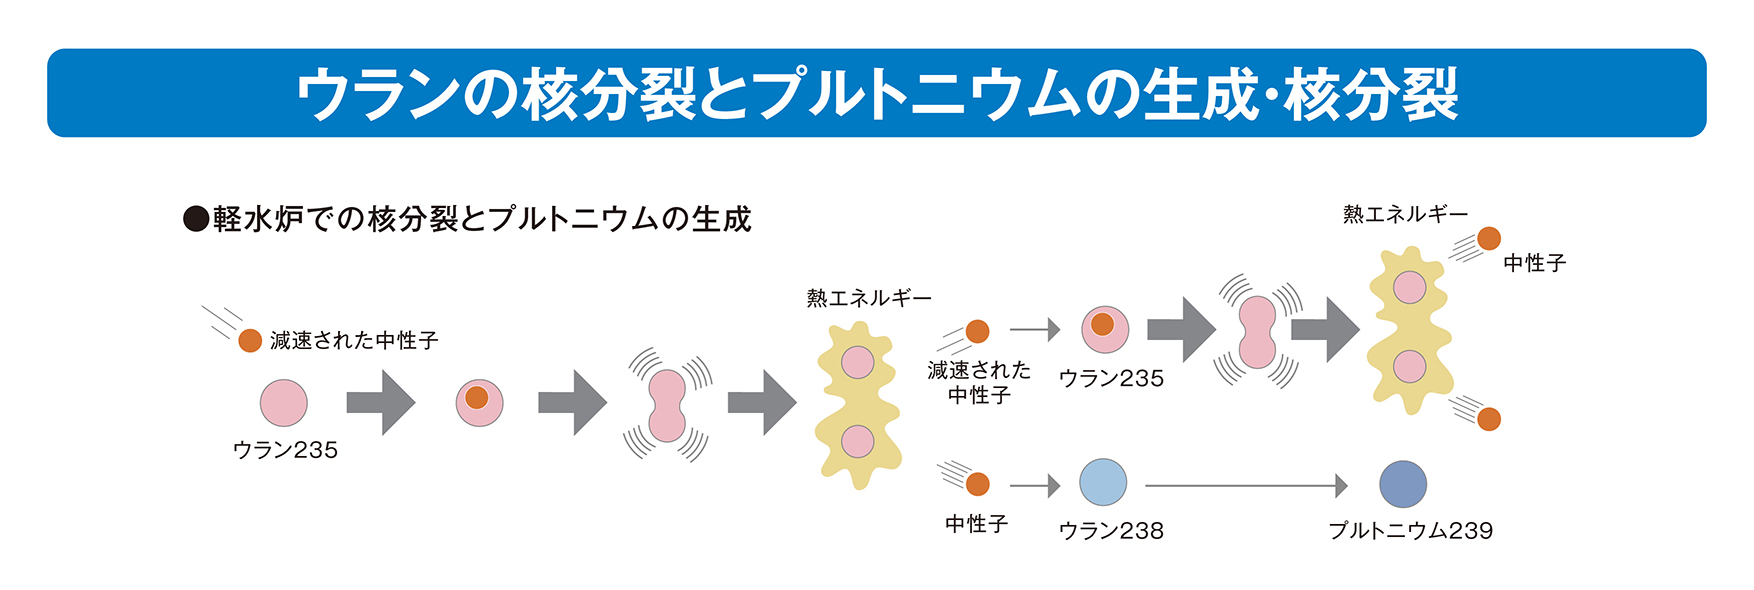 出典）日本原子力文化財団「原子力・エネルギー図面集」